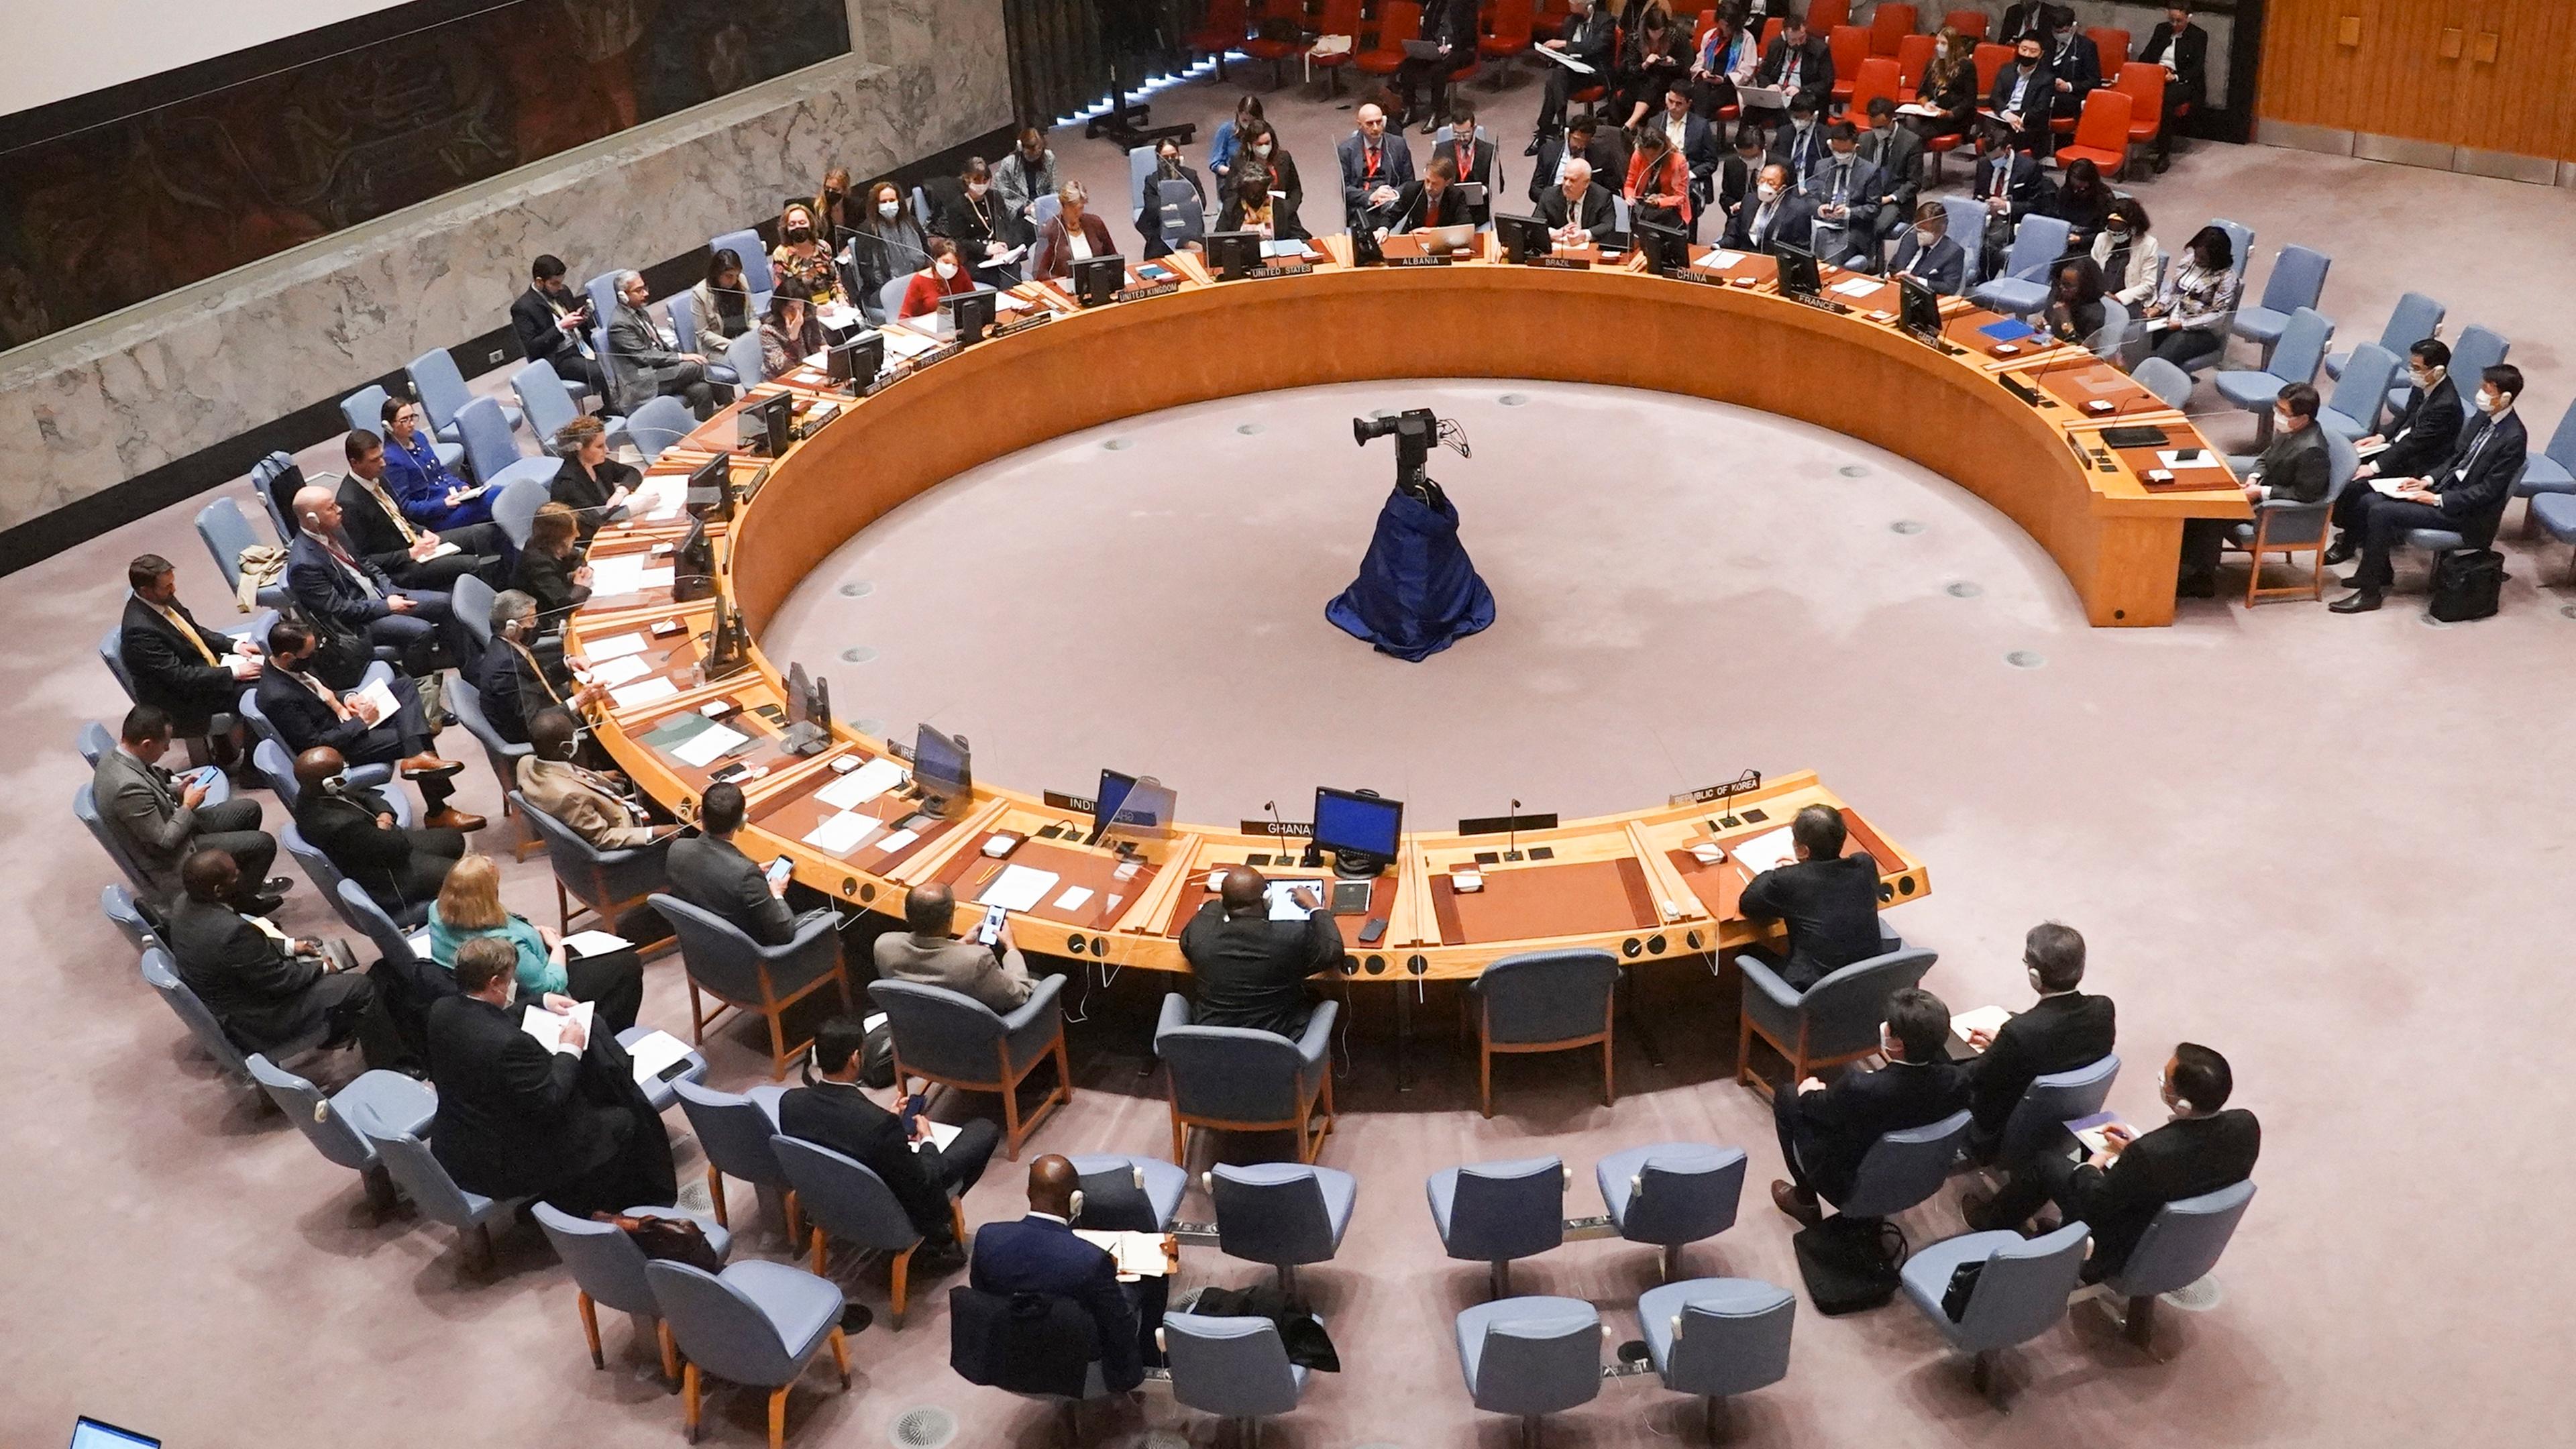 Der Sicherheitsrat der Vereinten Nationen tagt im UN-Hauptquartier wegen des Testabschusses einer Interkontinentalrakete durch Nordkorea